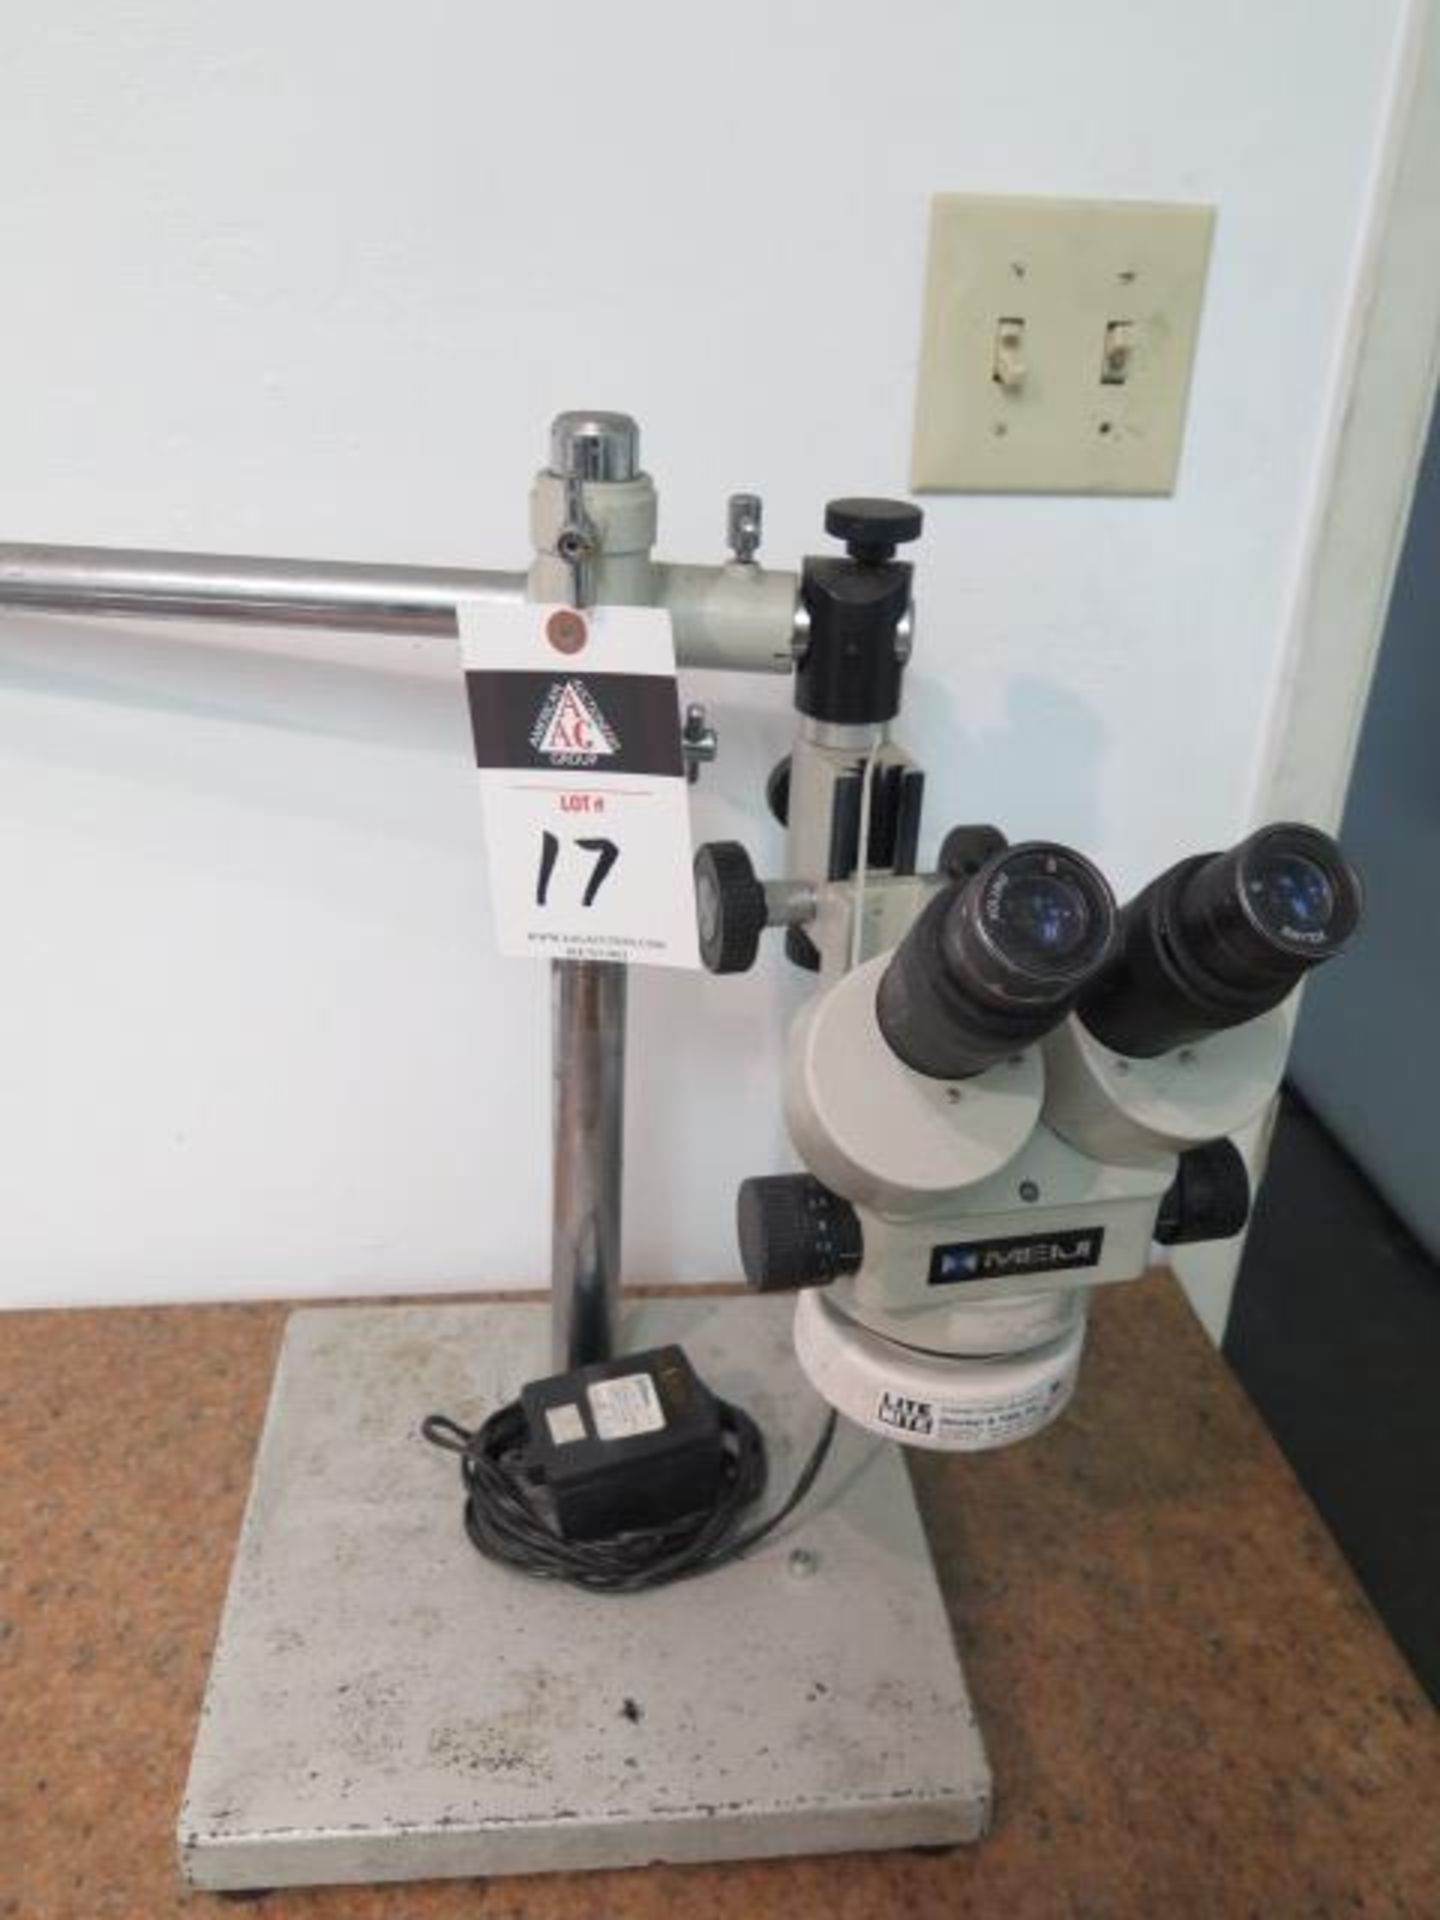 Meiji Stereo Microscope w/ Light Source (SOLD AS-IS - NO WARRANTY)